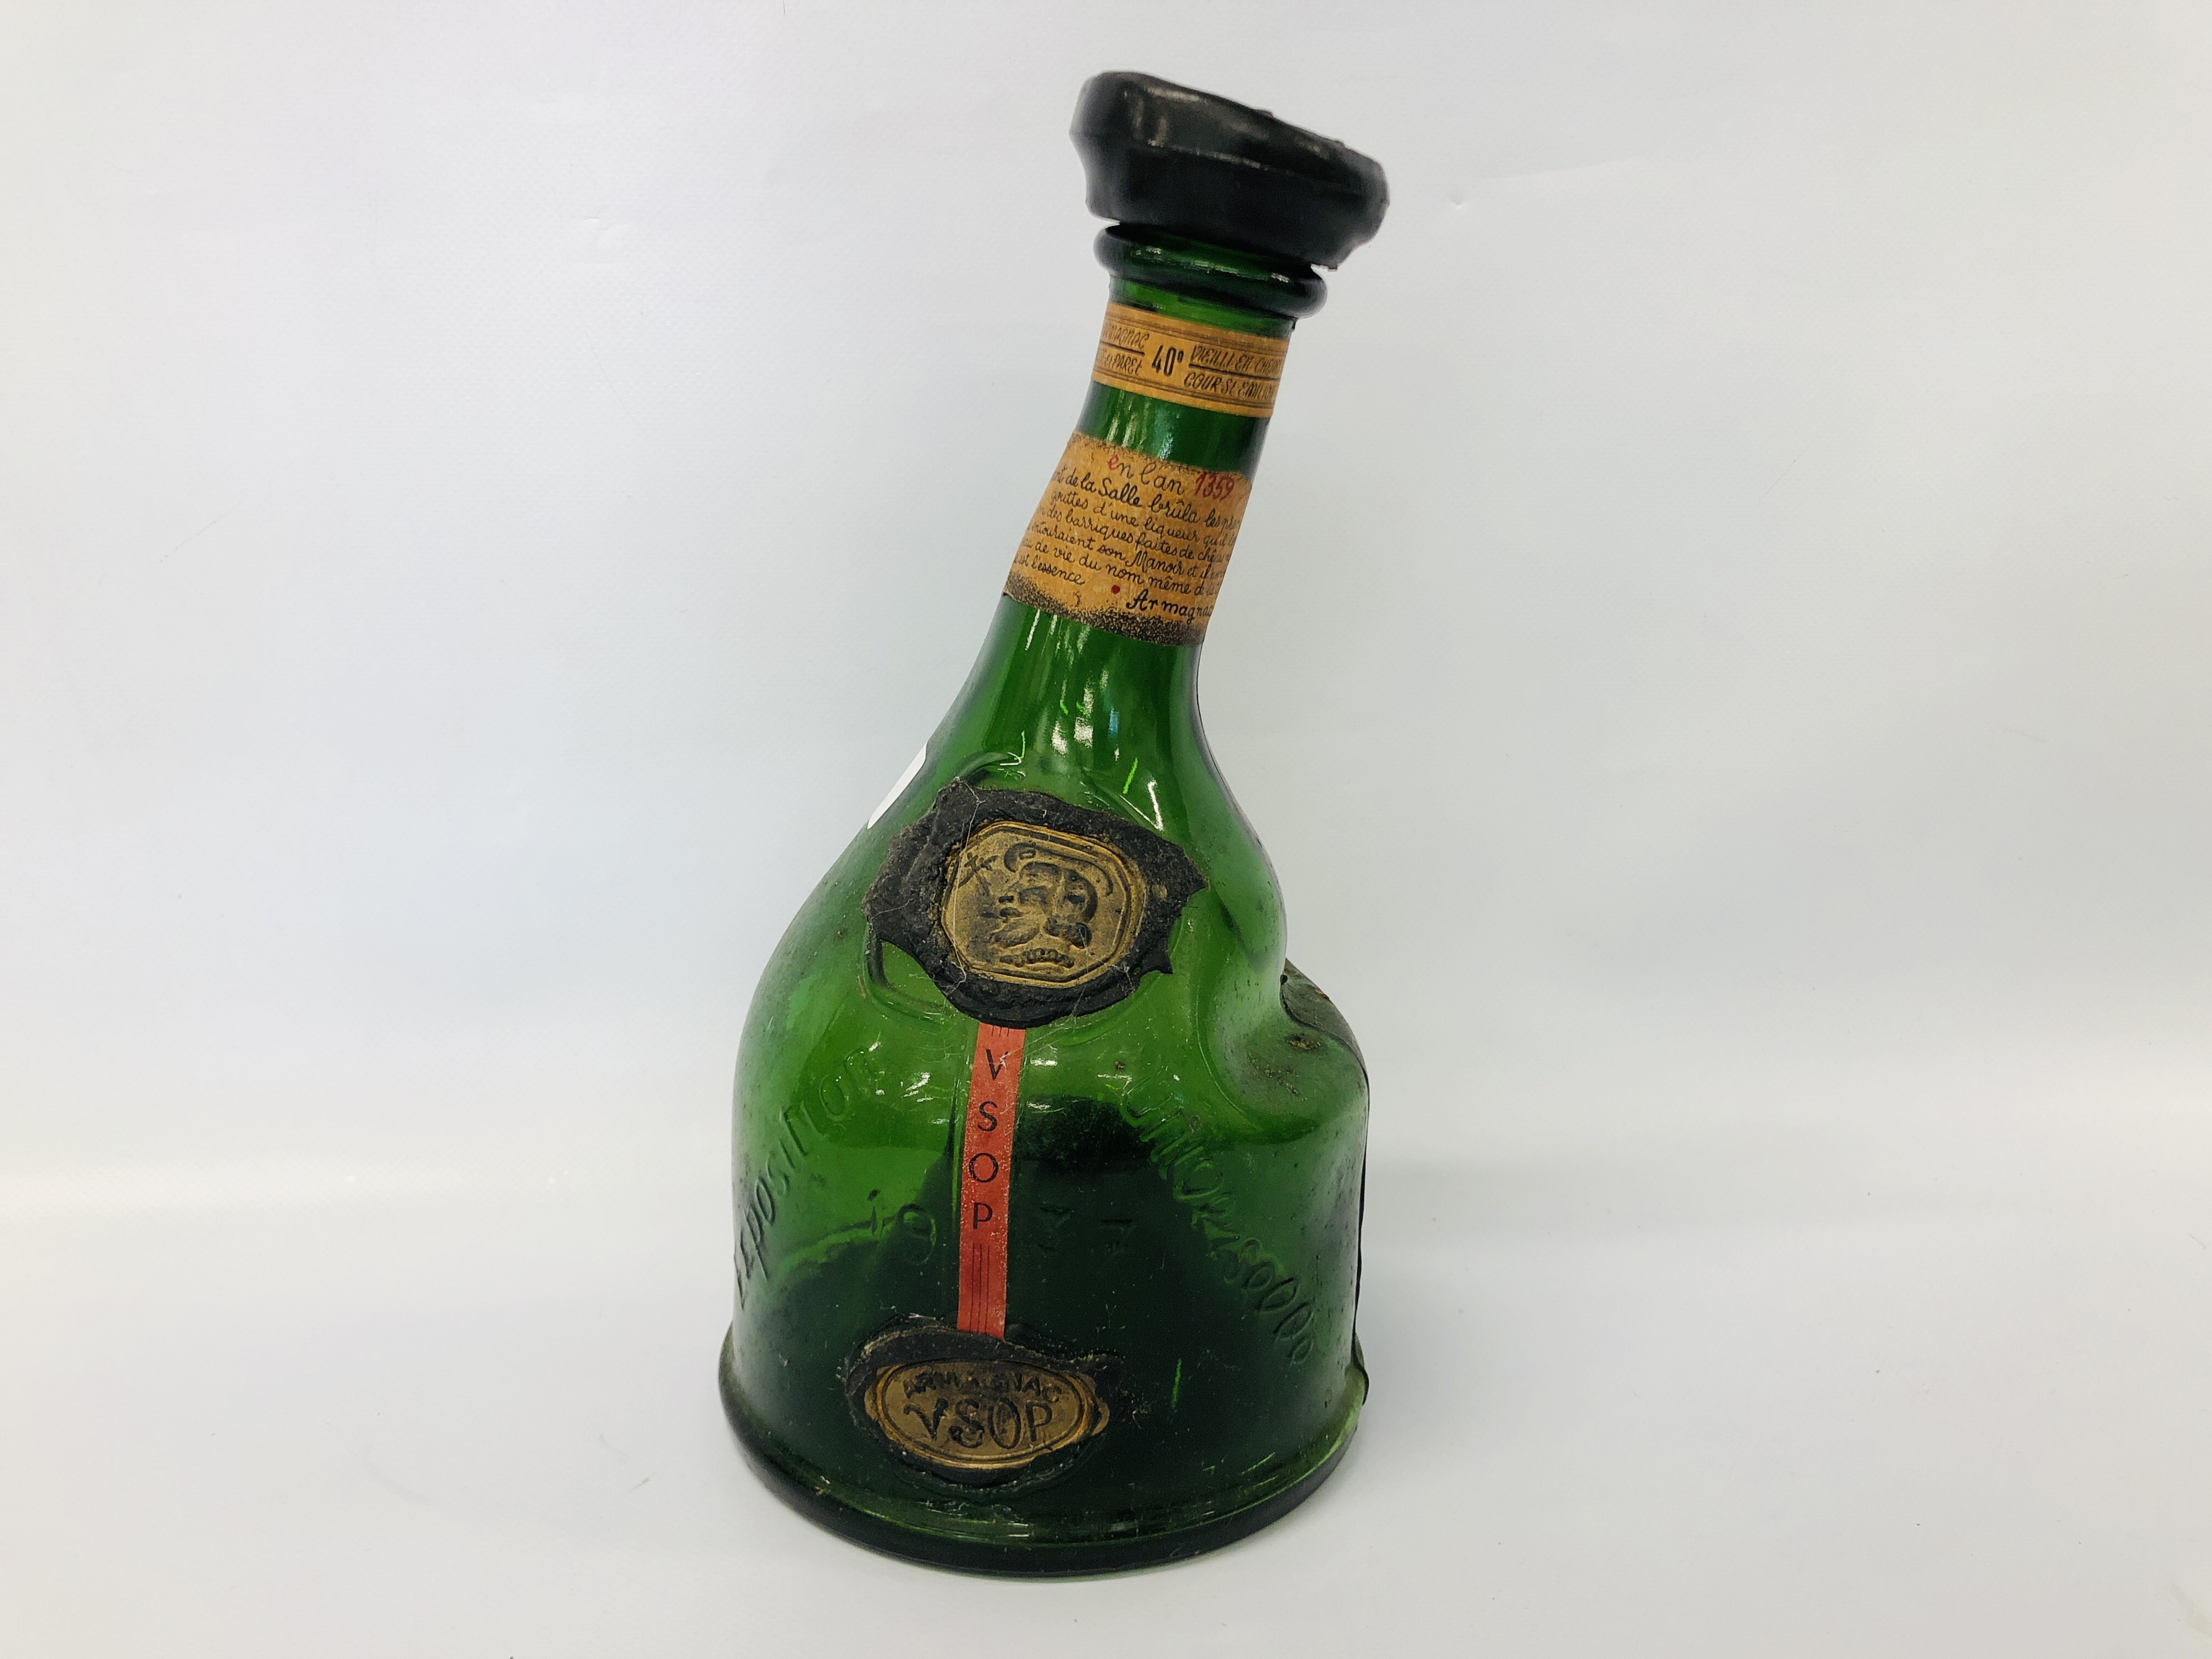 VINTAGE GREEN GLASS BOTTLE ST VIVANT ARMAGNAC 1937 (EMPTY)